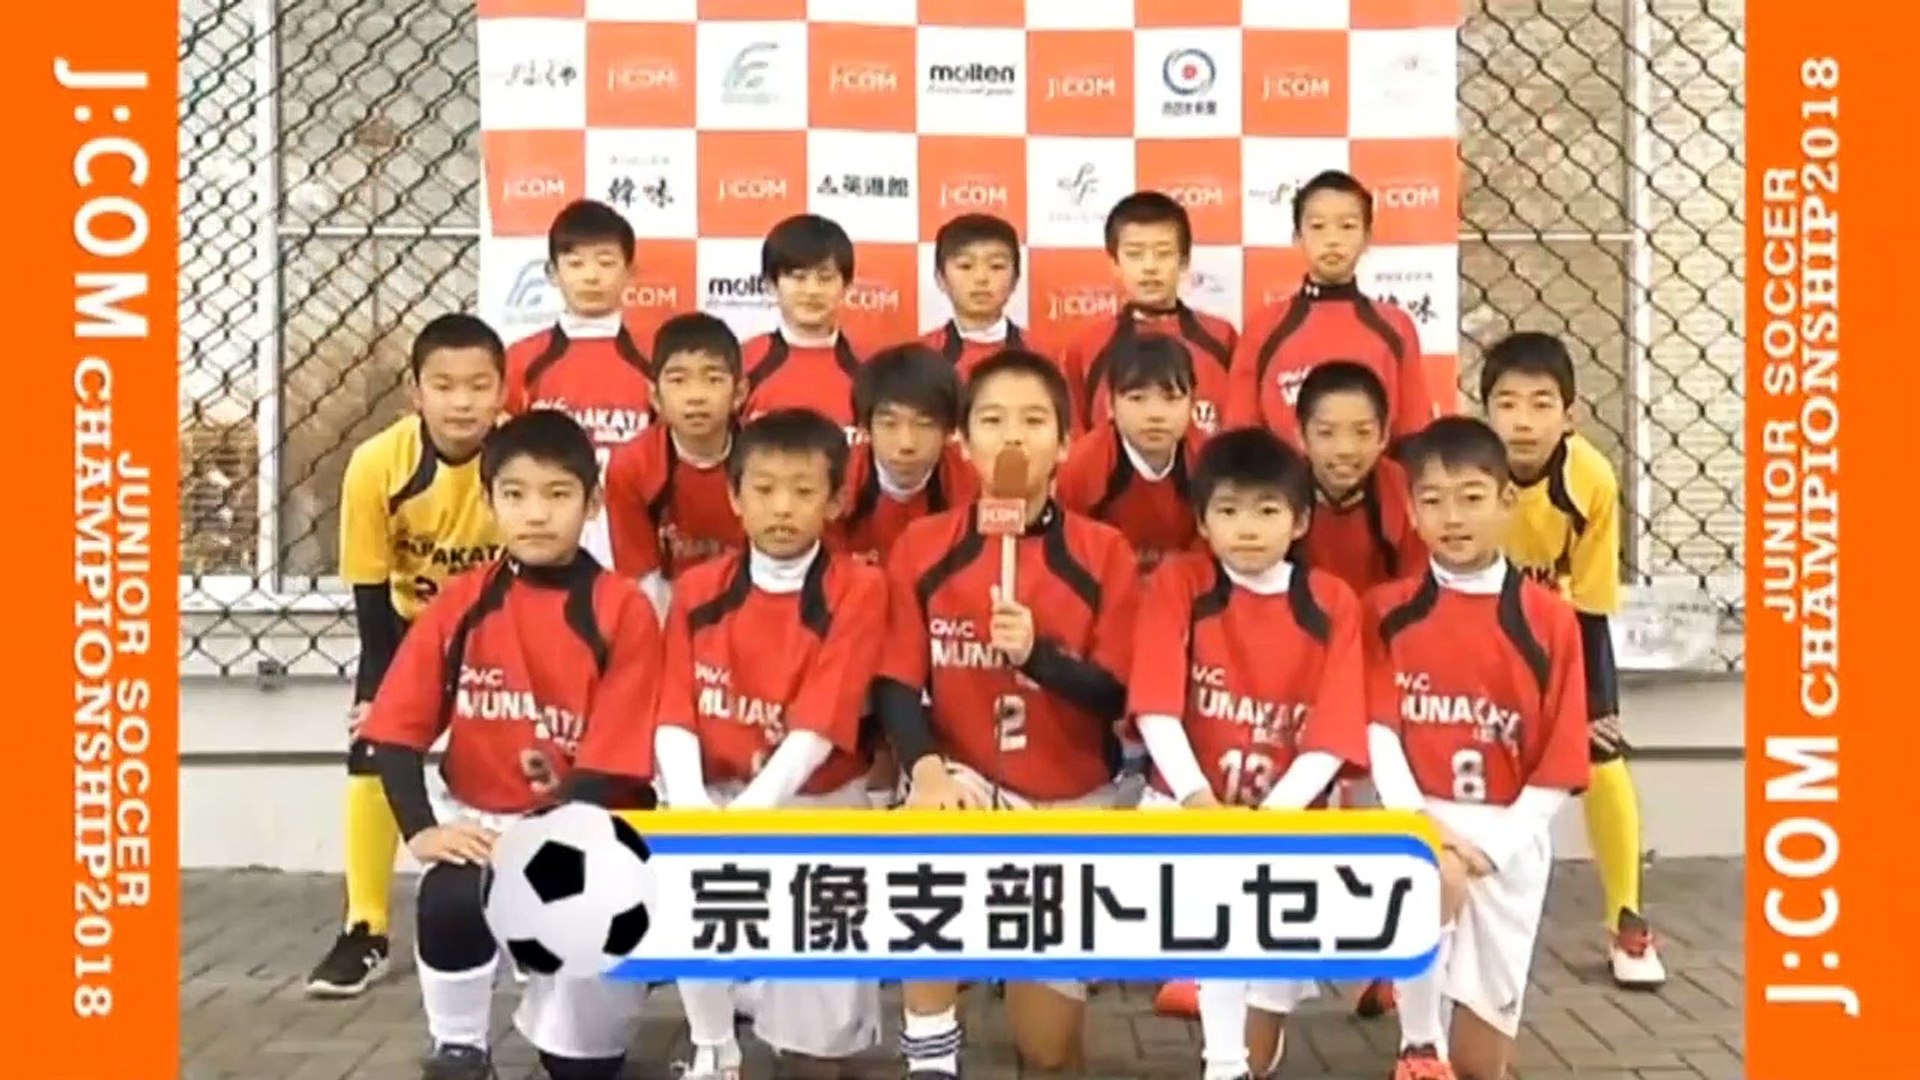 ２ ４ 小学生サッカー 福岡県 ジェイコム九州杯ジュニアサッカー ジェイコムカップ ２０１８年１１月２４日 土曜日 ２５日 日曜日 動画 Dailymotion